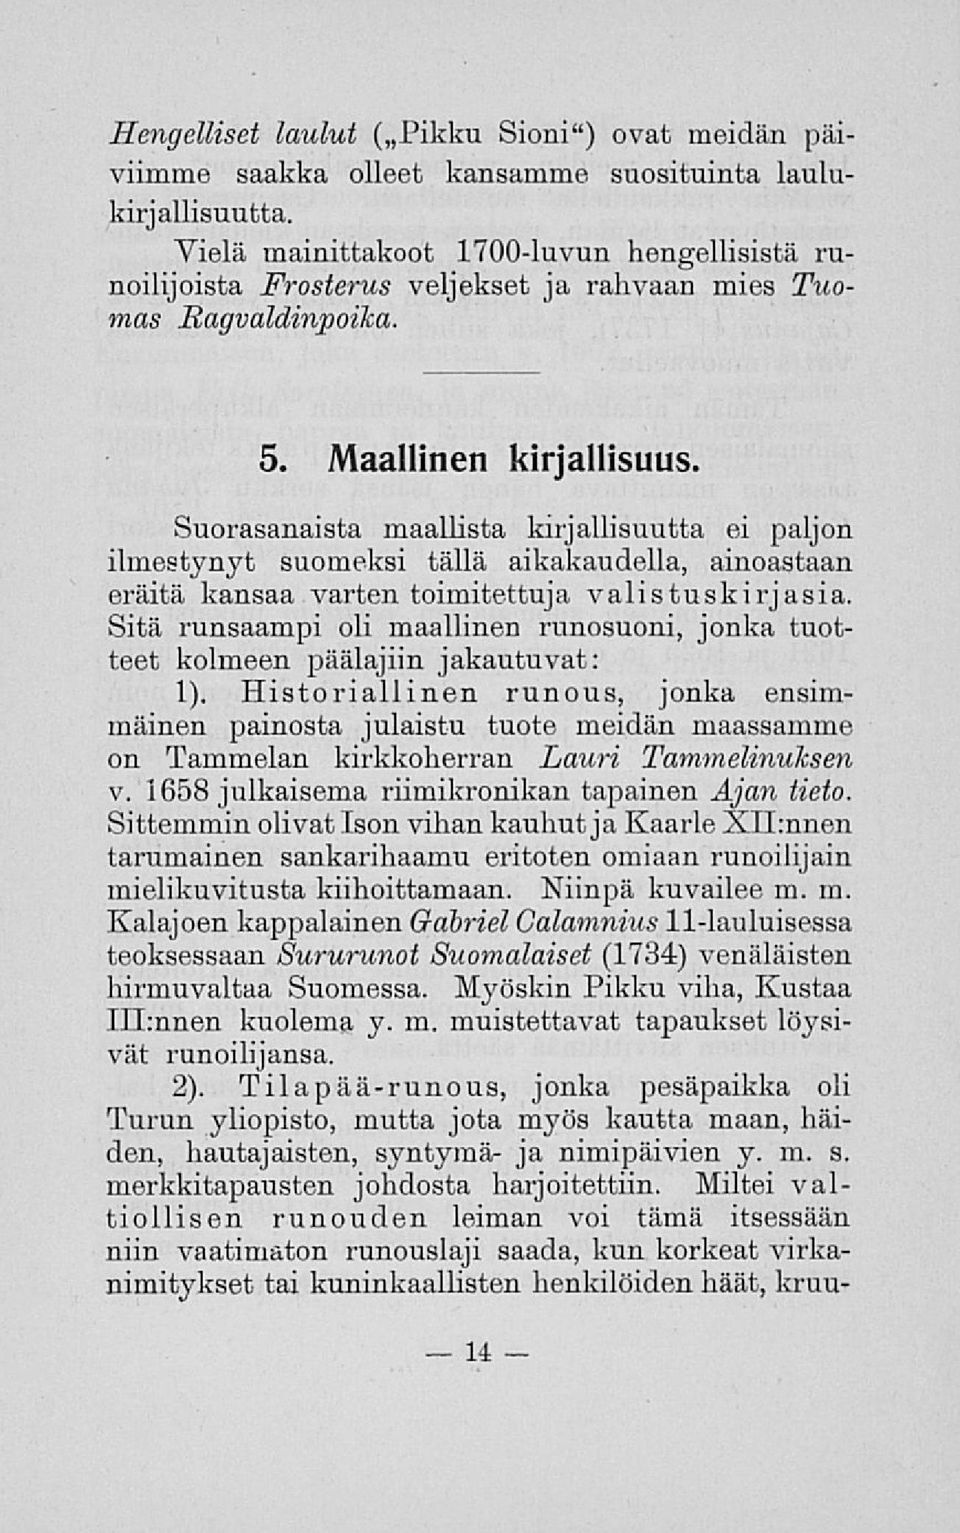 Suorasanaista maallista kirjallisuutta ei paljon ilmestynyt suomeksi tällä aikakaudella, ainoastaan eräitä kansaa varten toimitettuja valistuskirjasia.